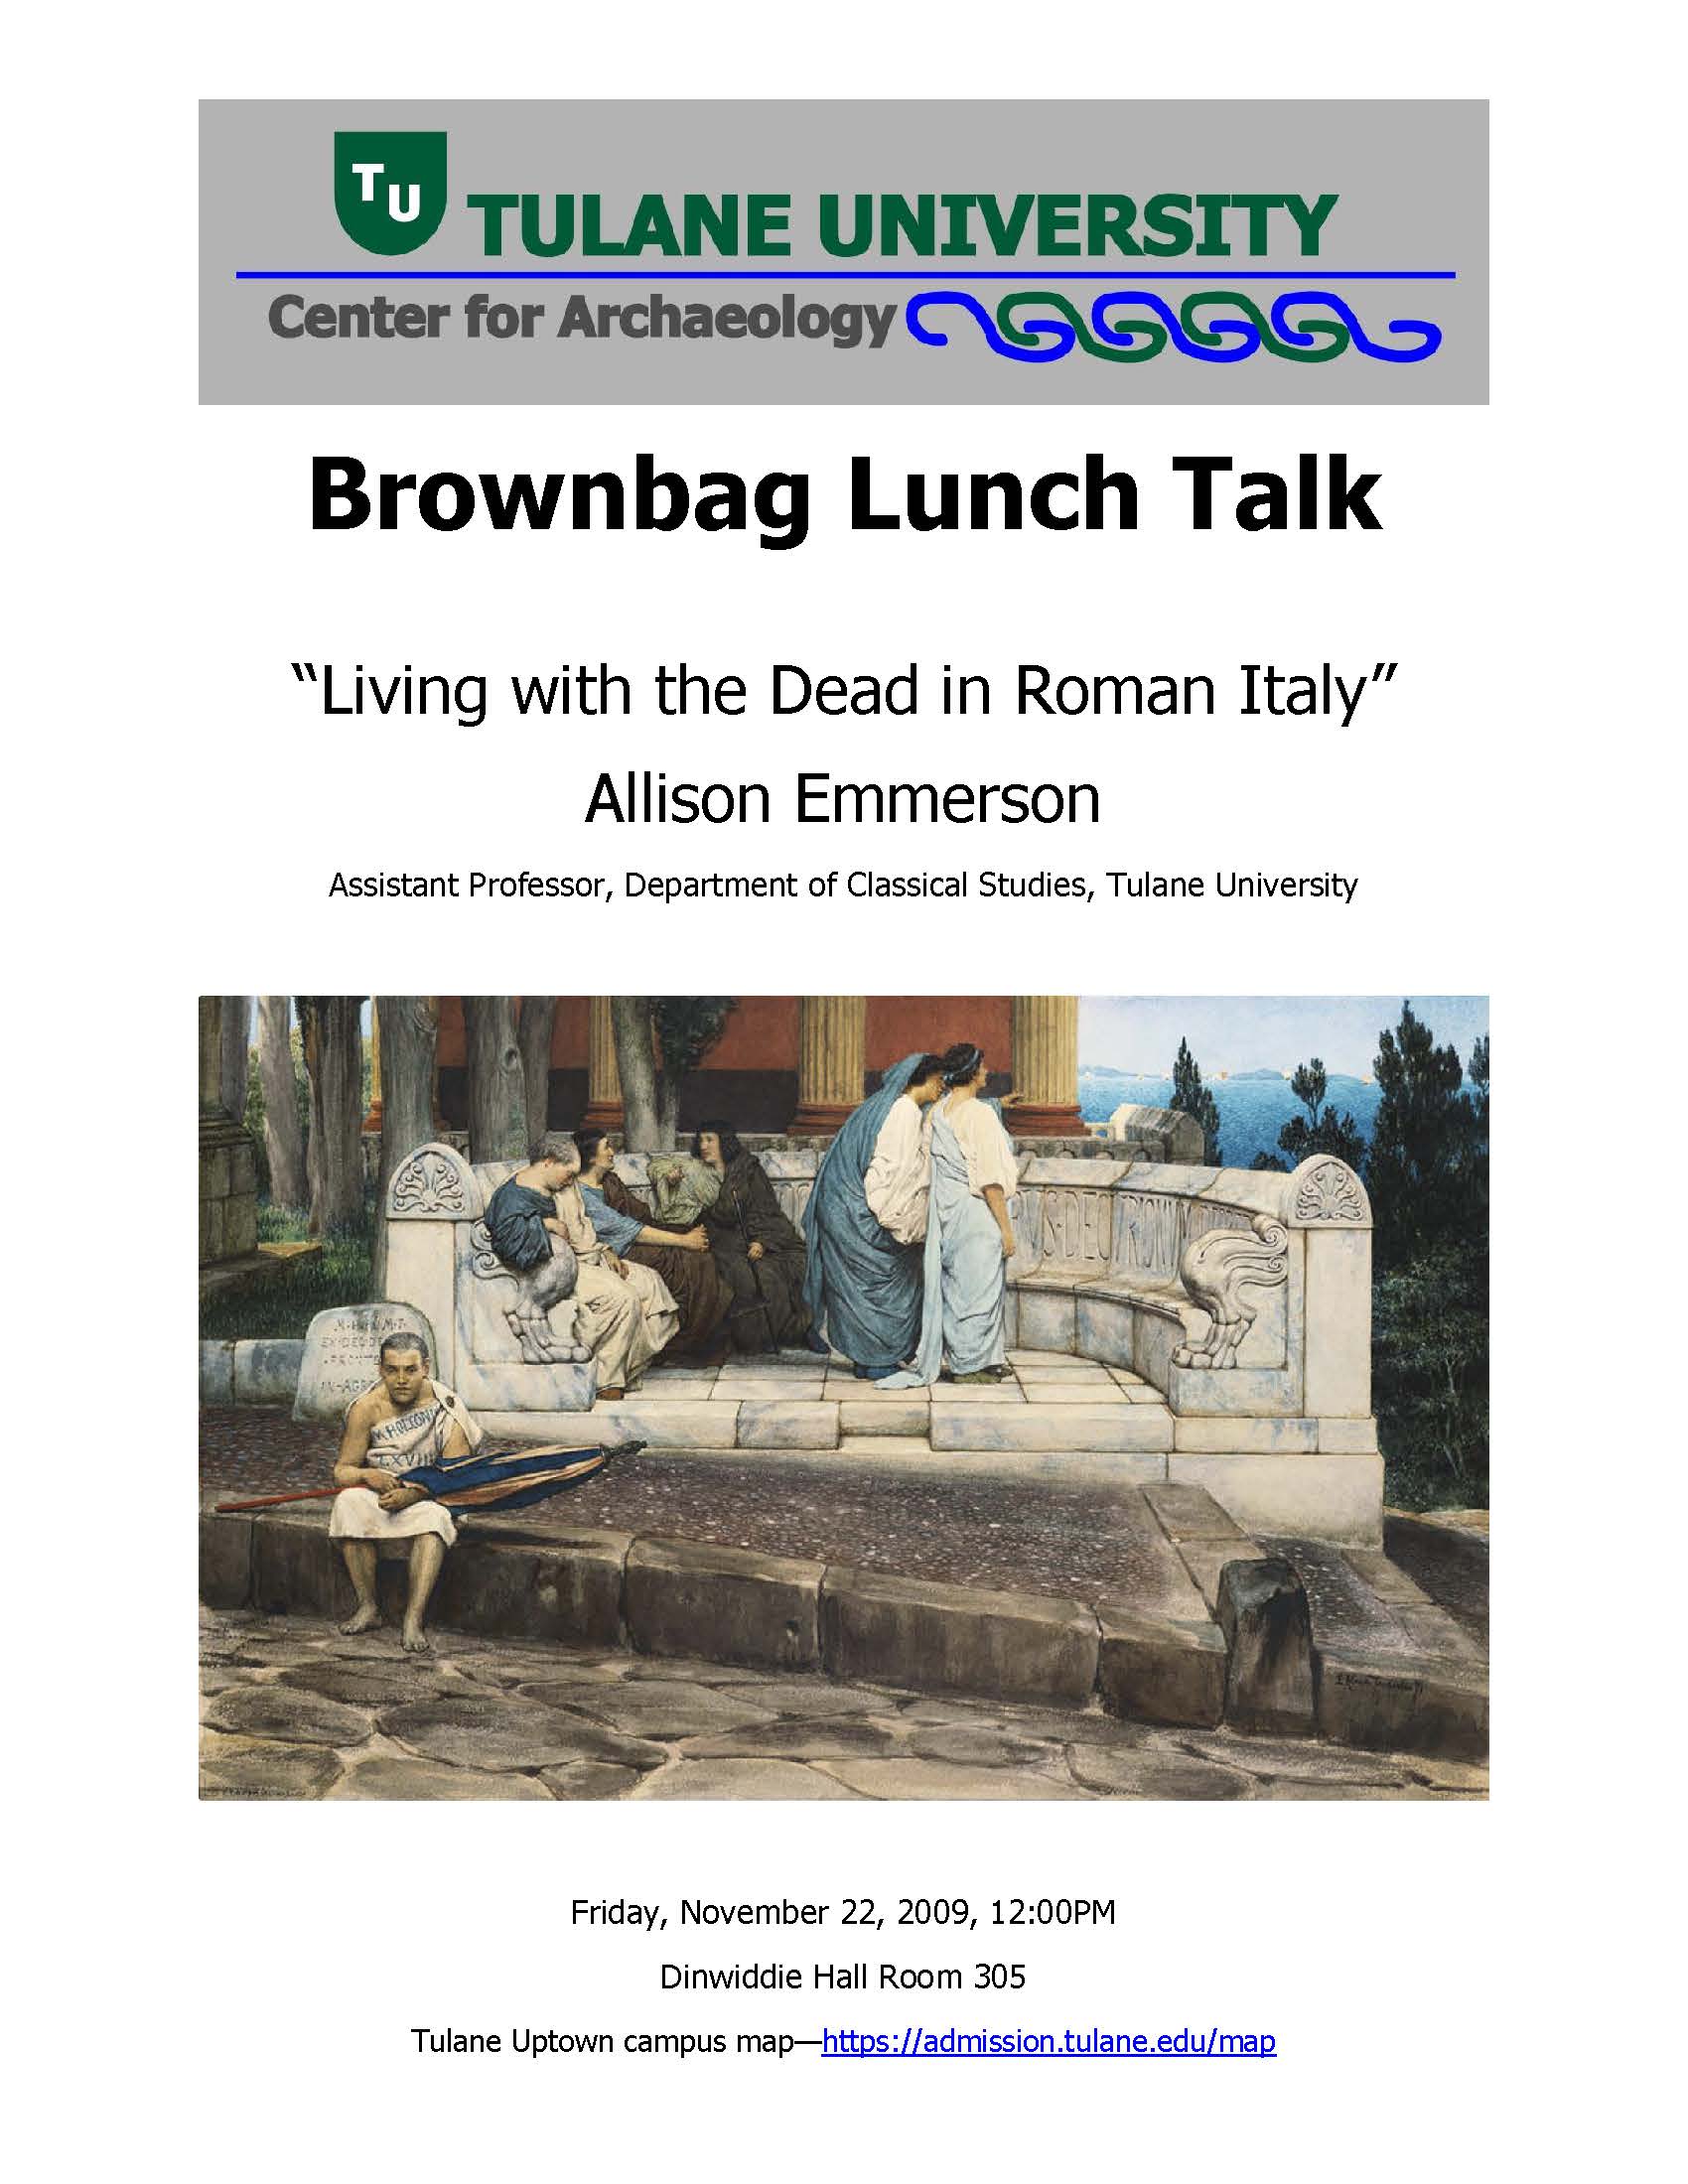 Brownbag Event Flyer